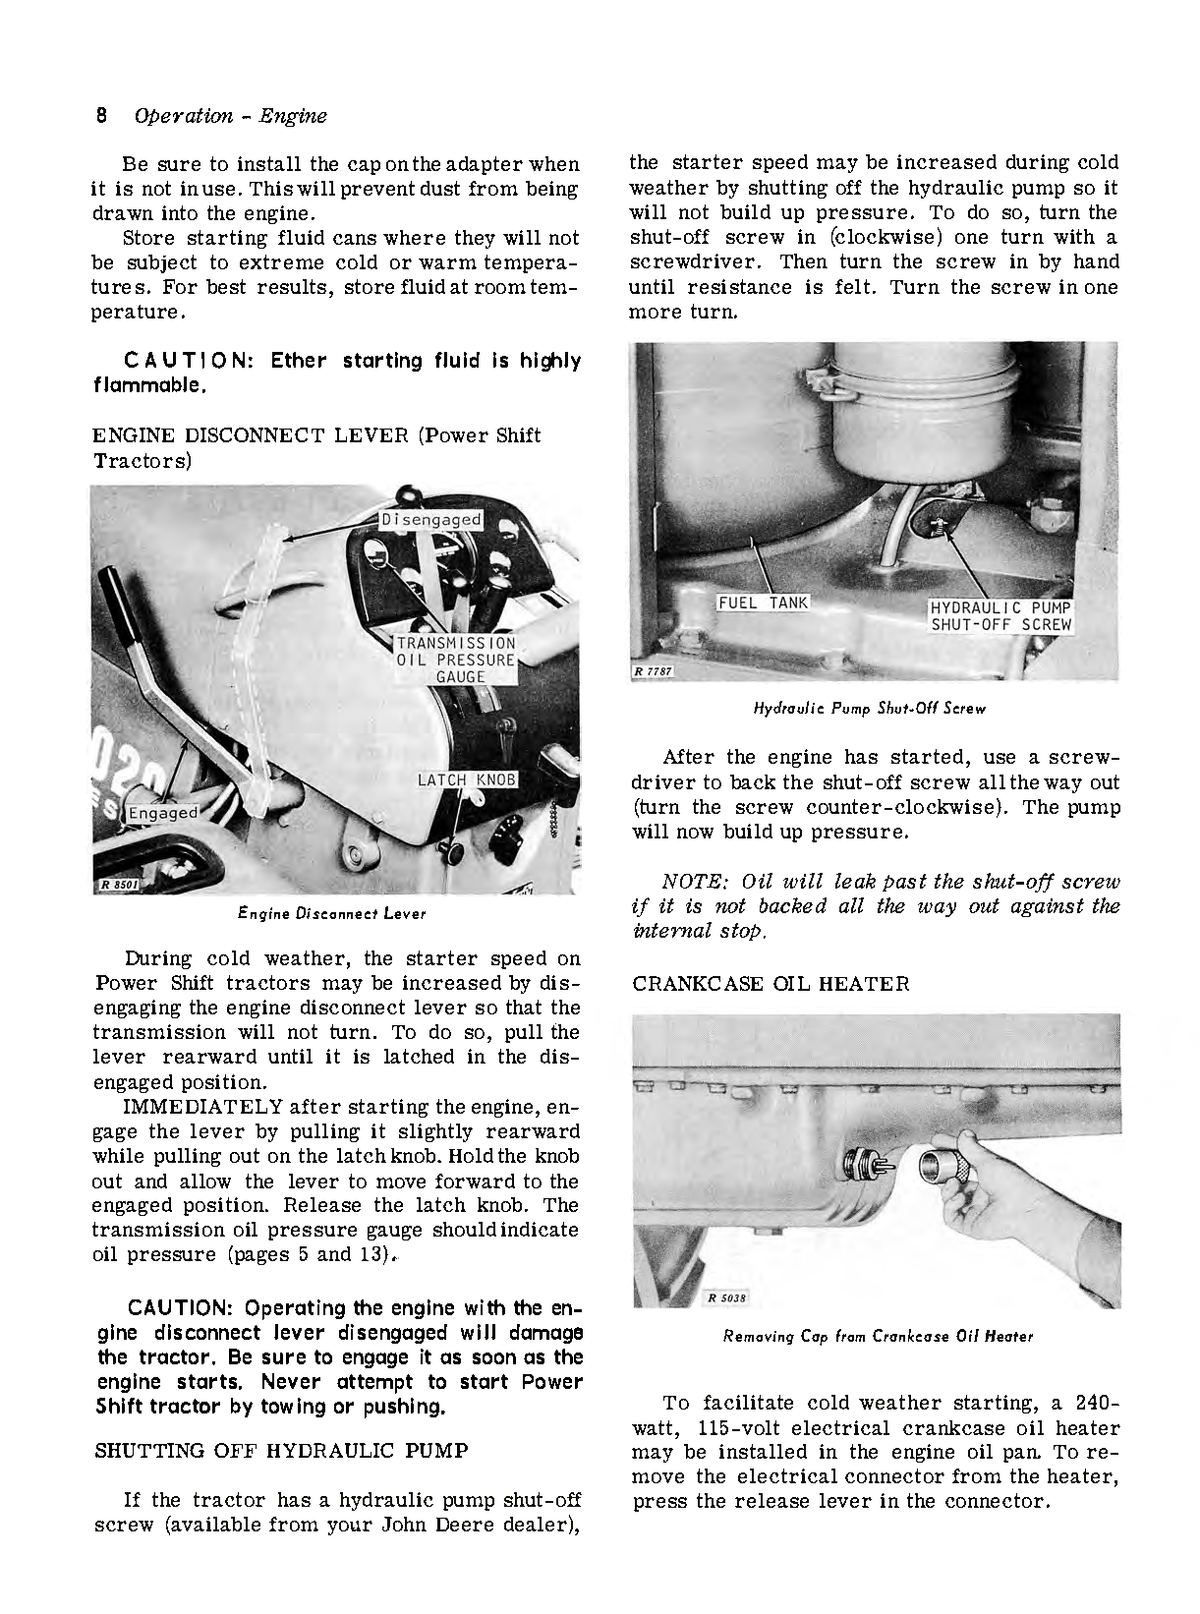 John Deere 4020 Tractor Operator's Manual / Owner's Manual